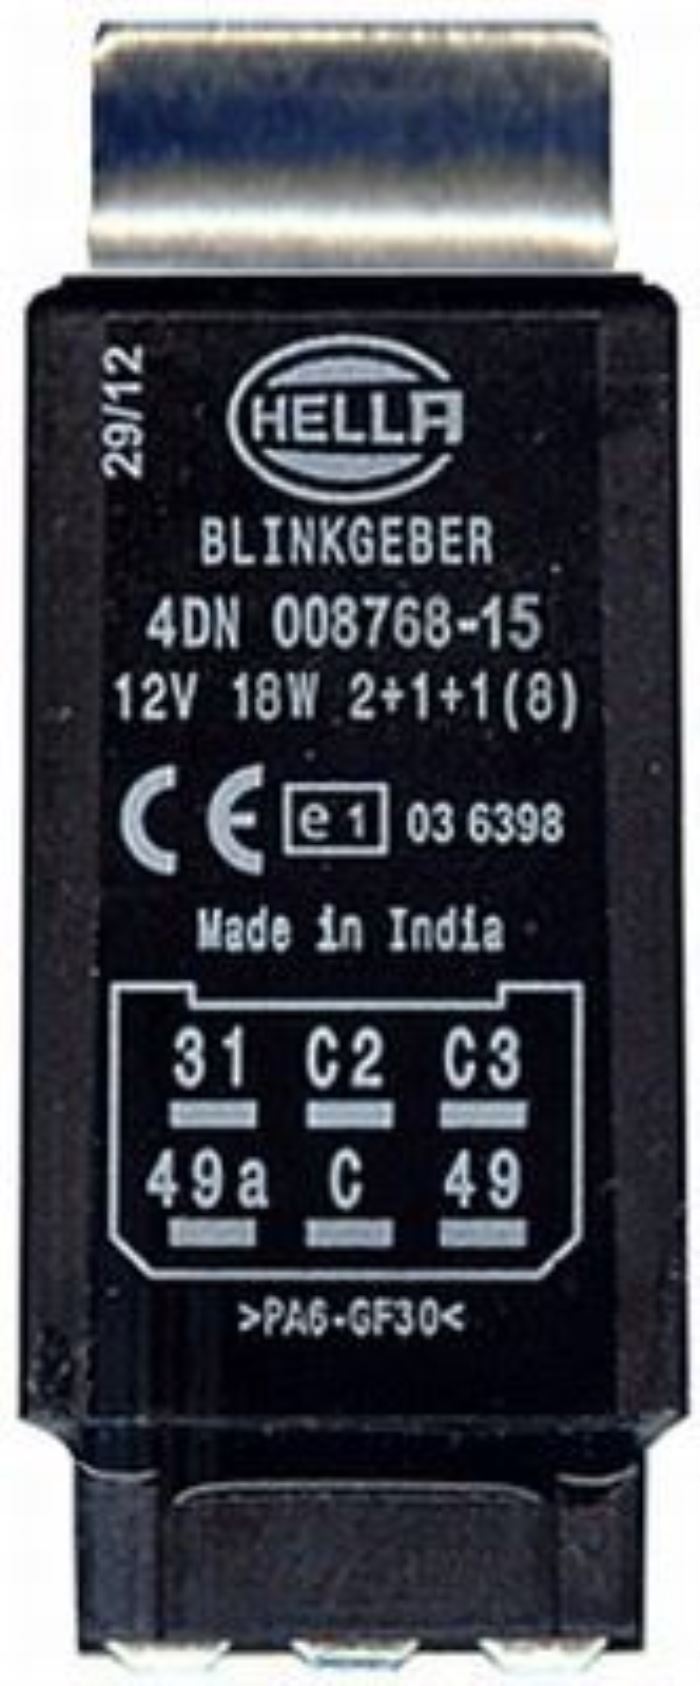 přerušovač blinkru 12V 18W  2+1+1(8)